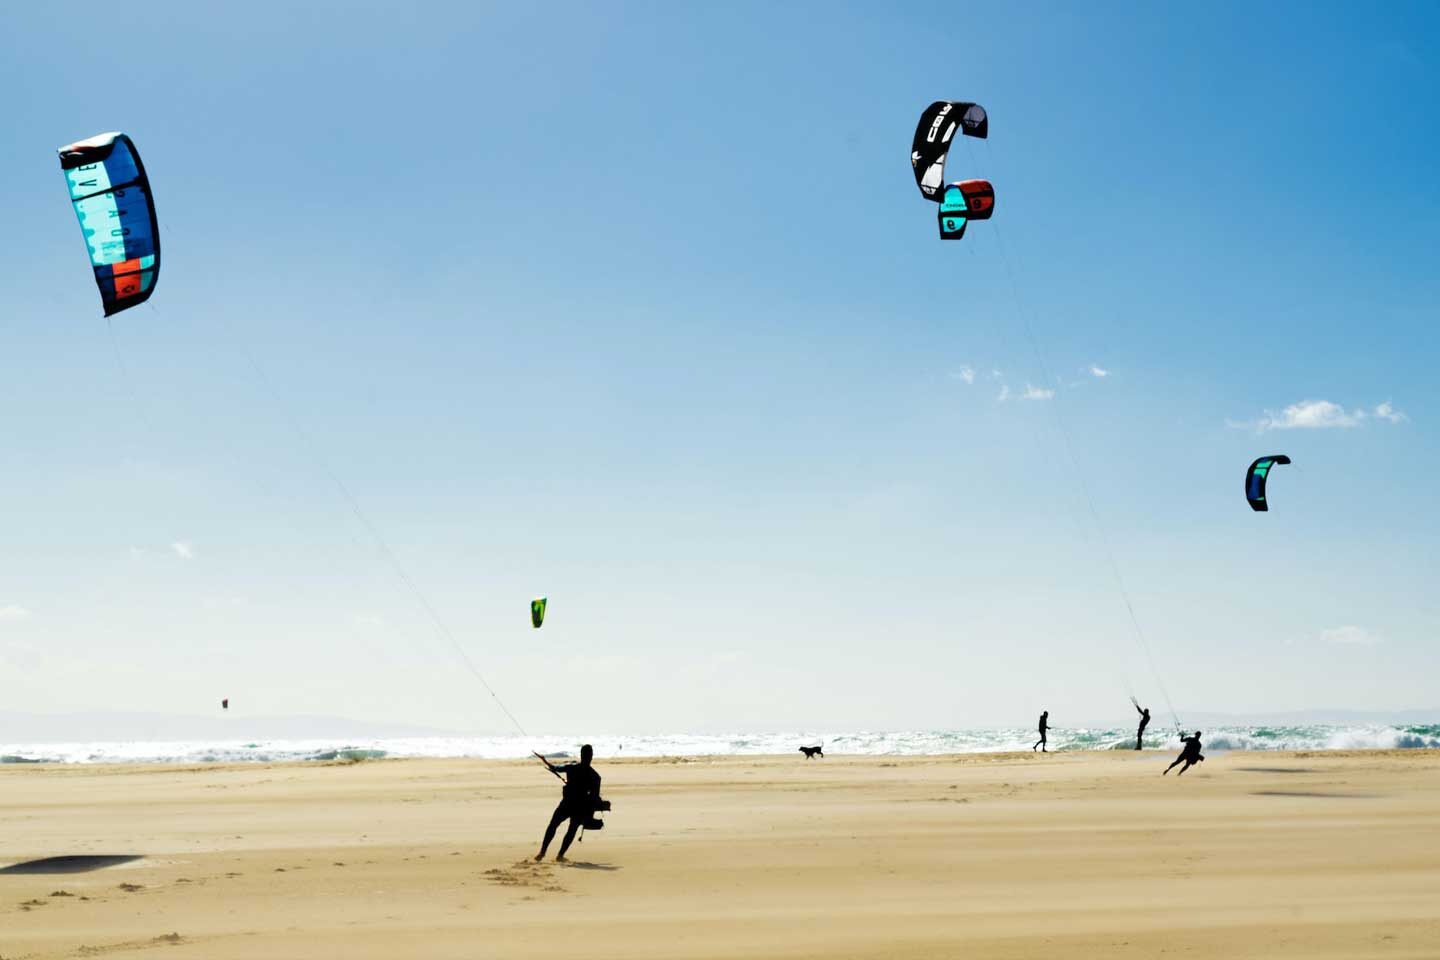 Kitesurfing on the beach in Tarifa, Spain